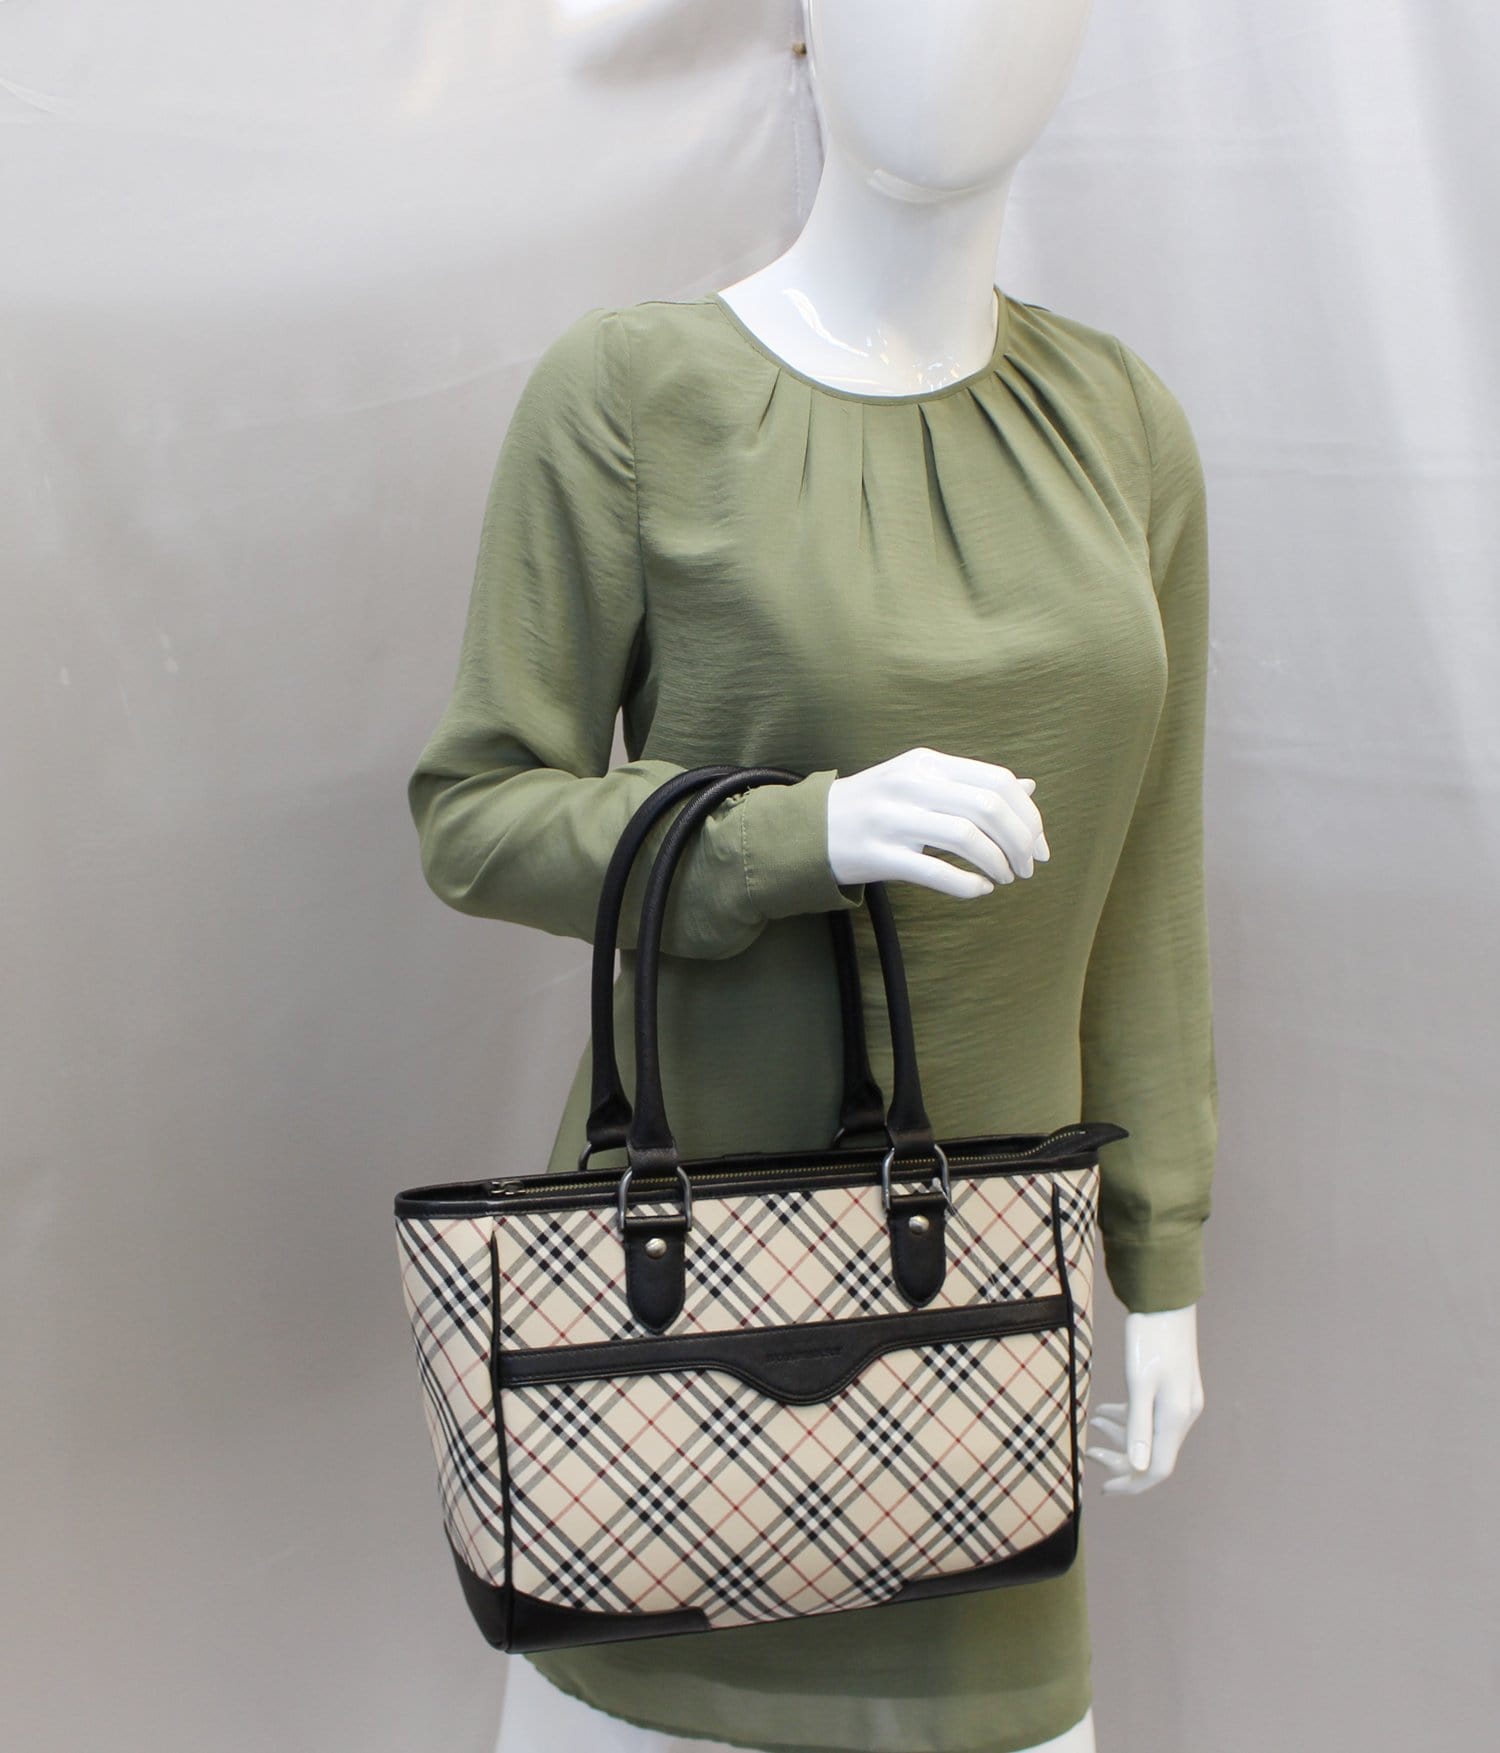 Burberry Shoulder Bag - BURBERRY Women Bag Check Plaid Jacquard